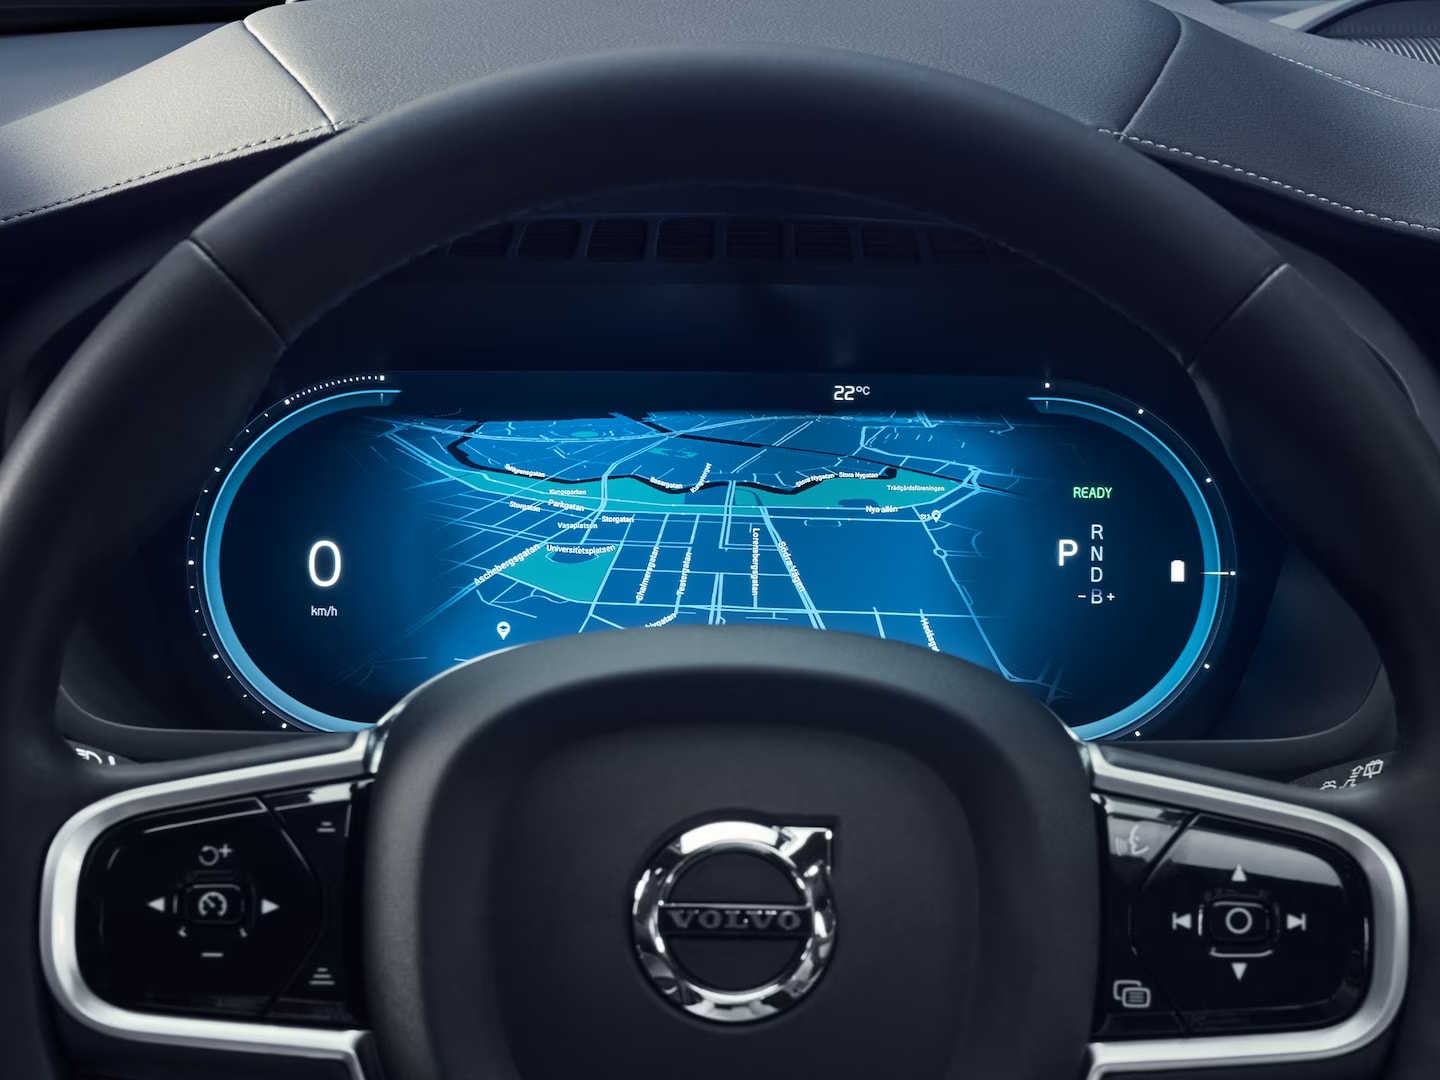 Display informazioni conducente dietro al volante della Volvo XC90 plug-in hybrid.